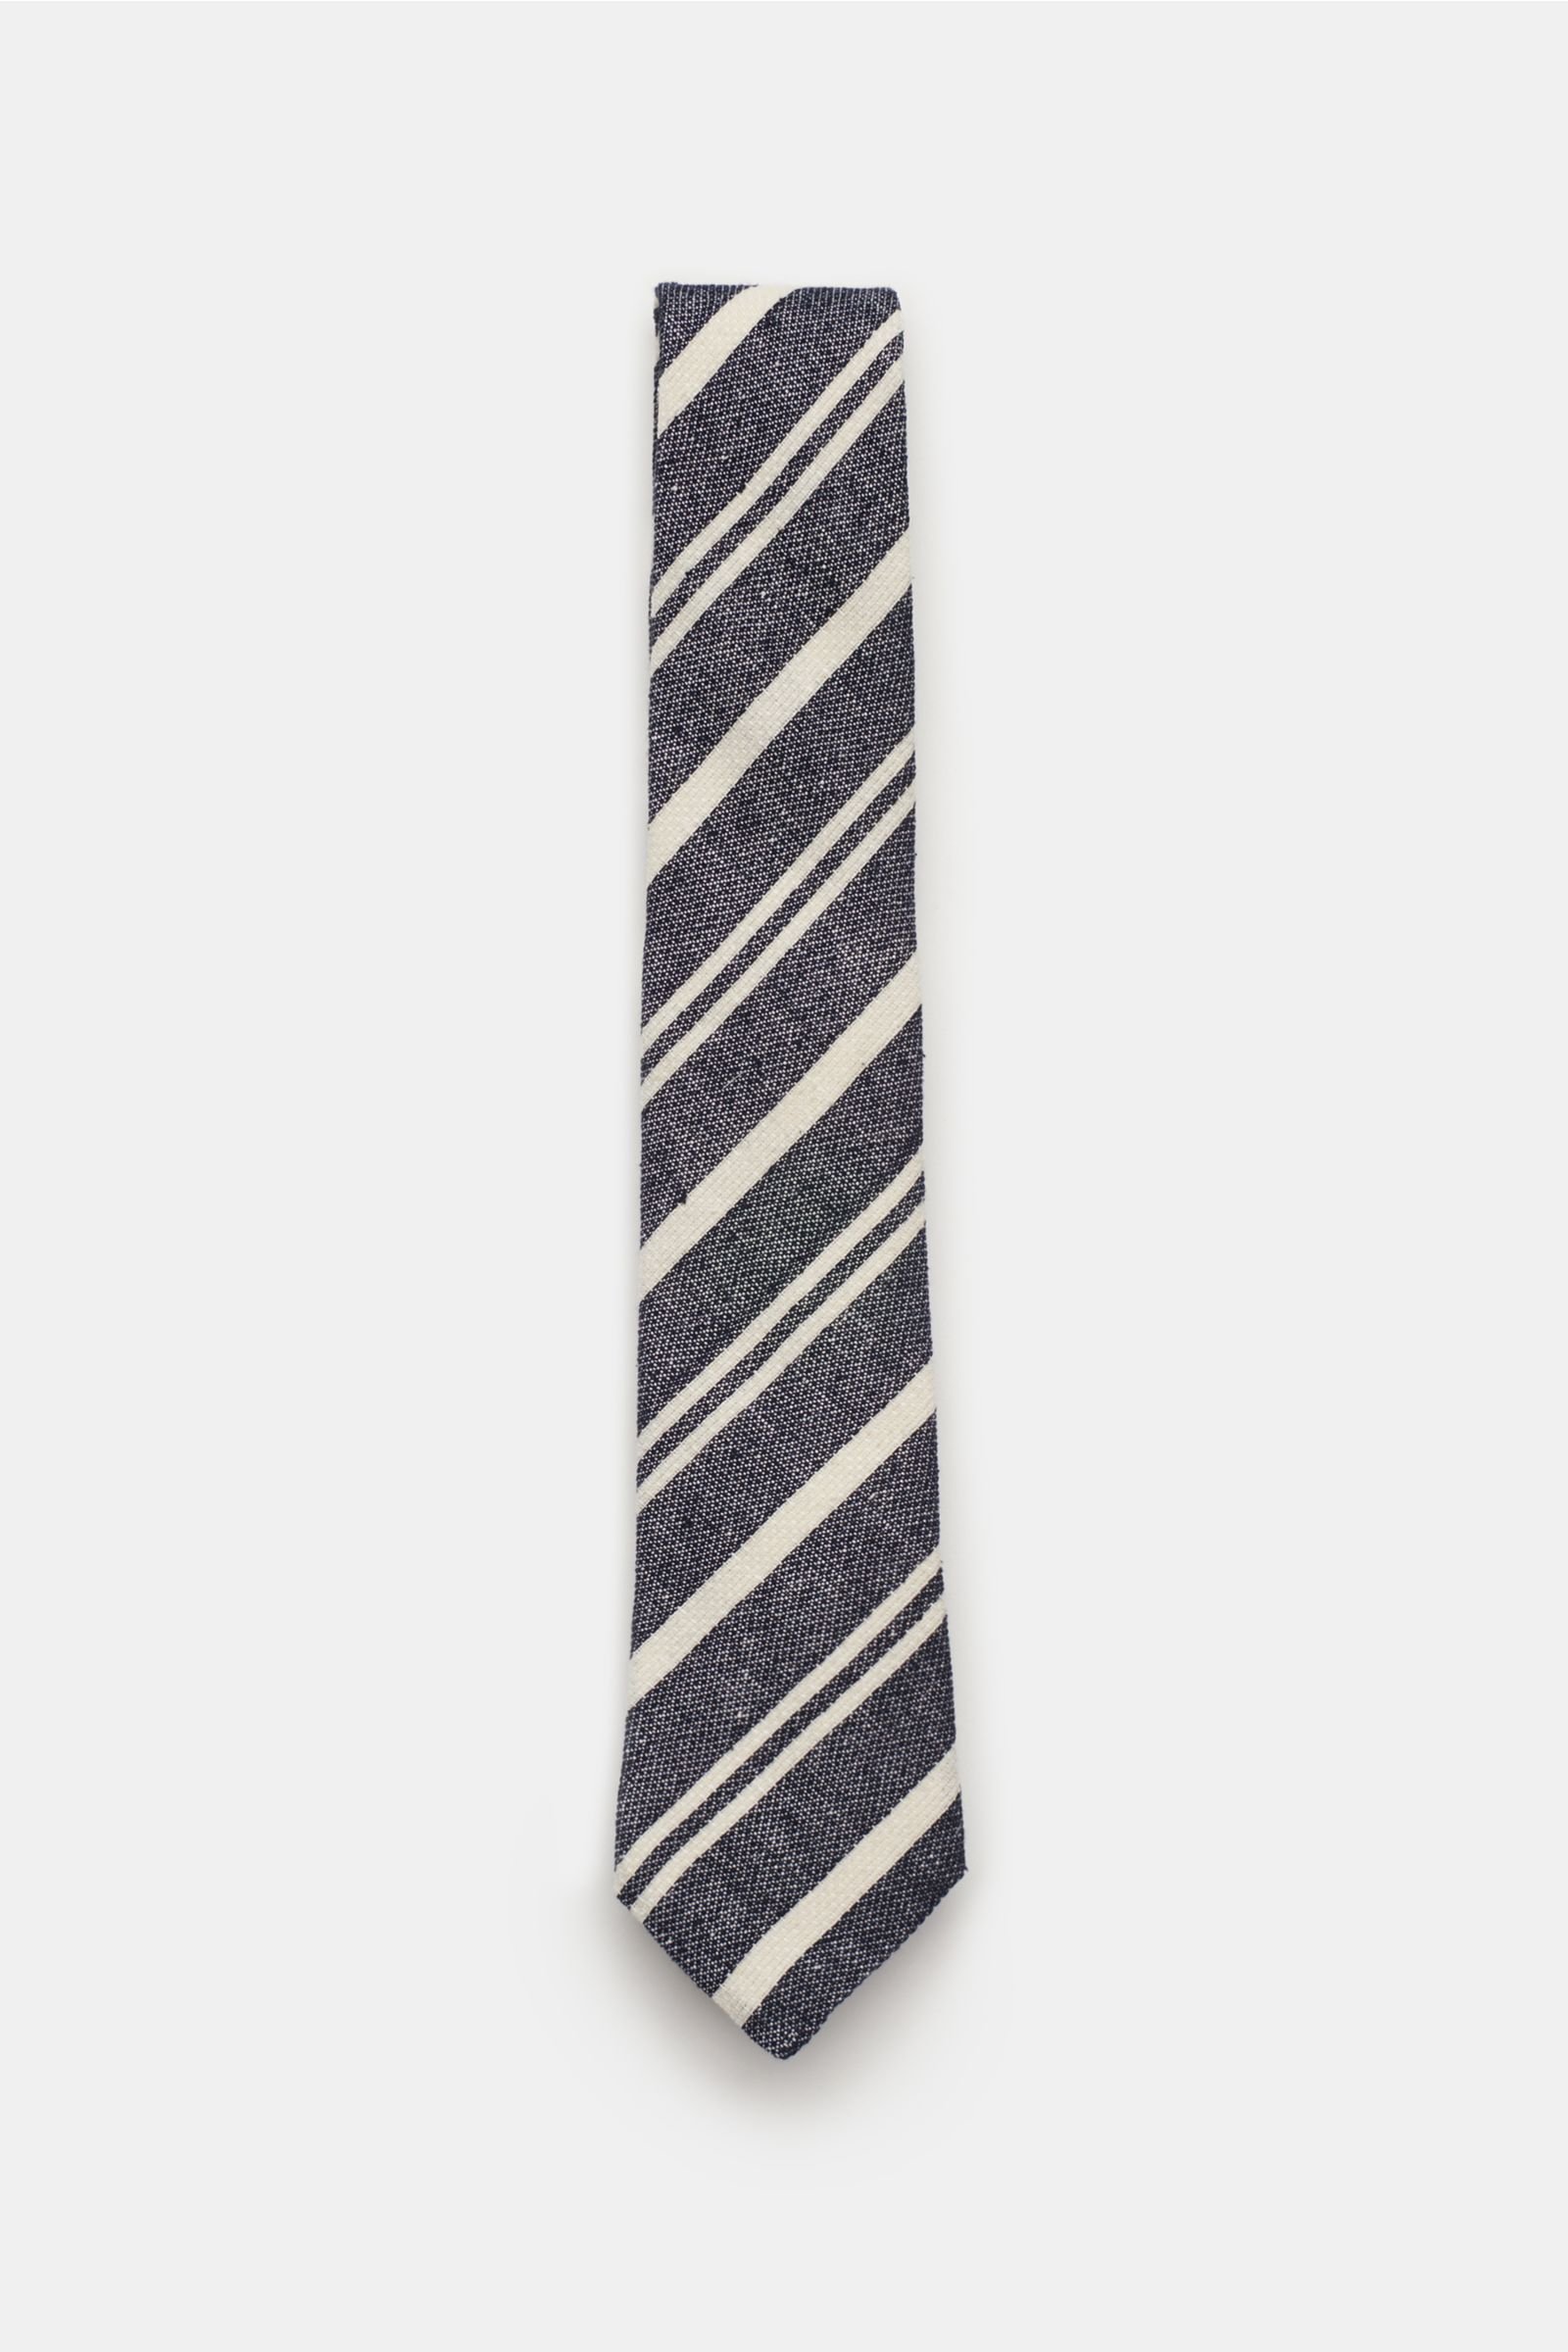 Linen tie dark navy/off-white striped